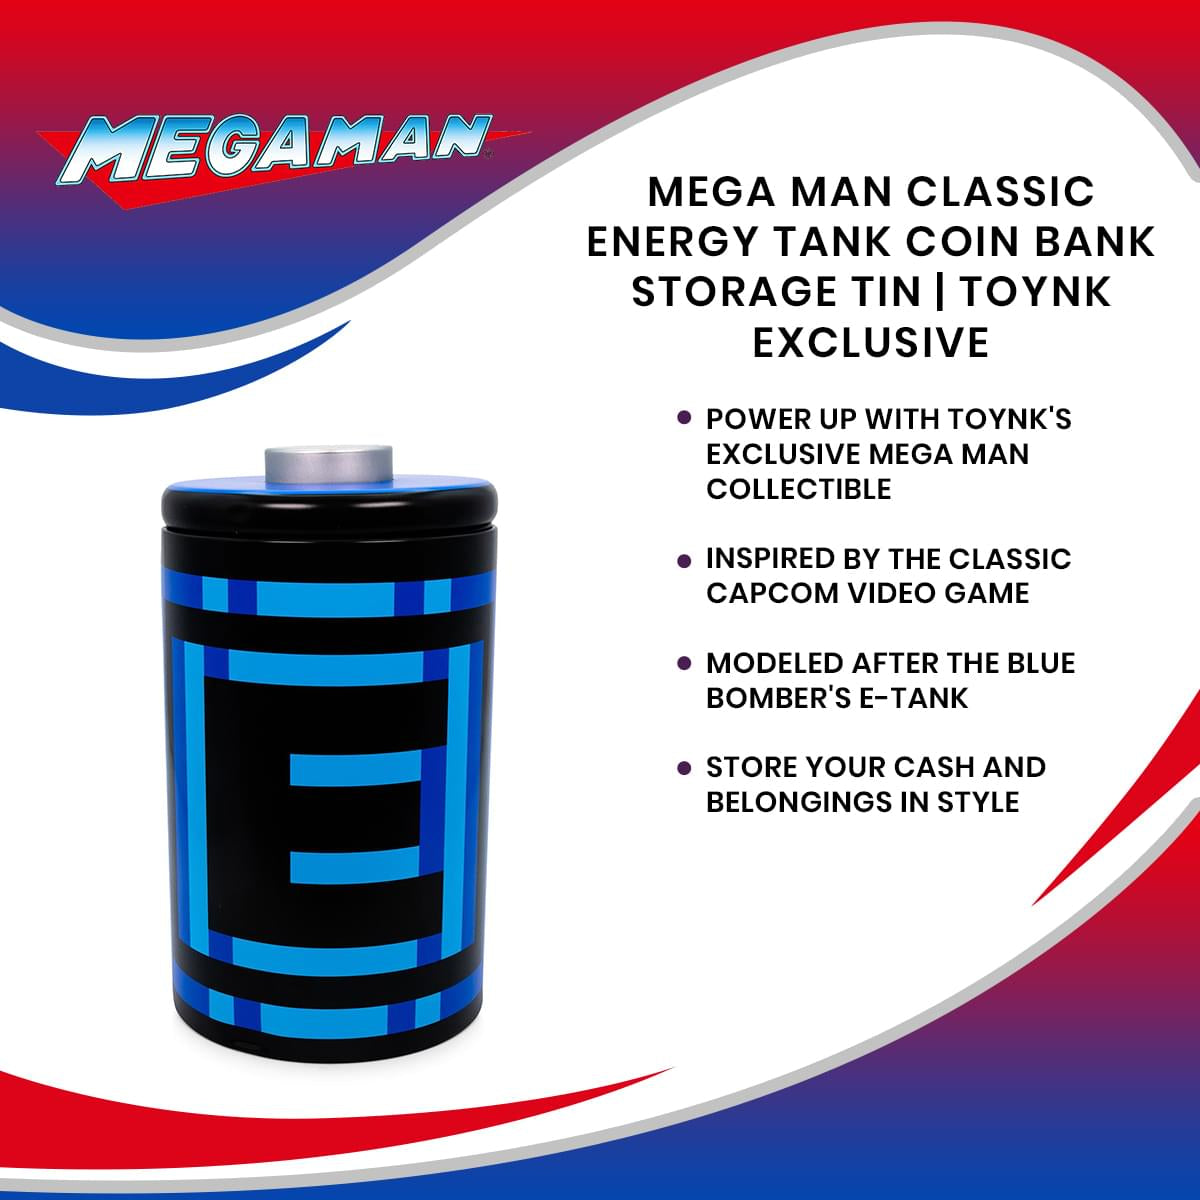 Mega Man Classic Energy Tank Coin Bank Storage Tin | Toynk Exclusive